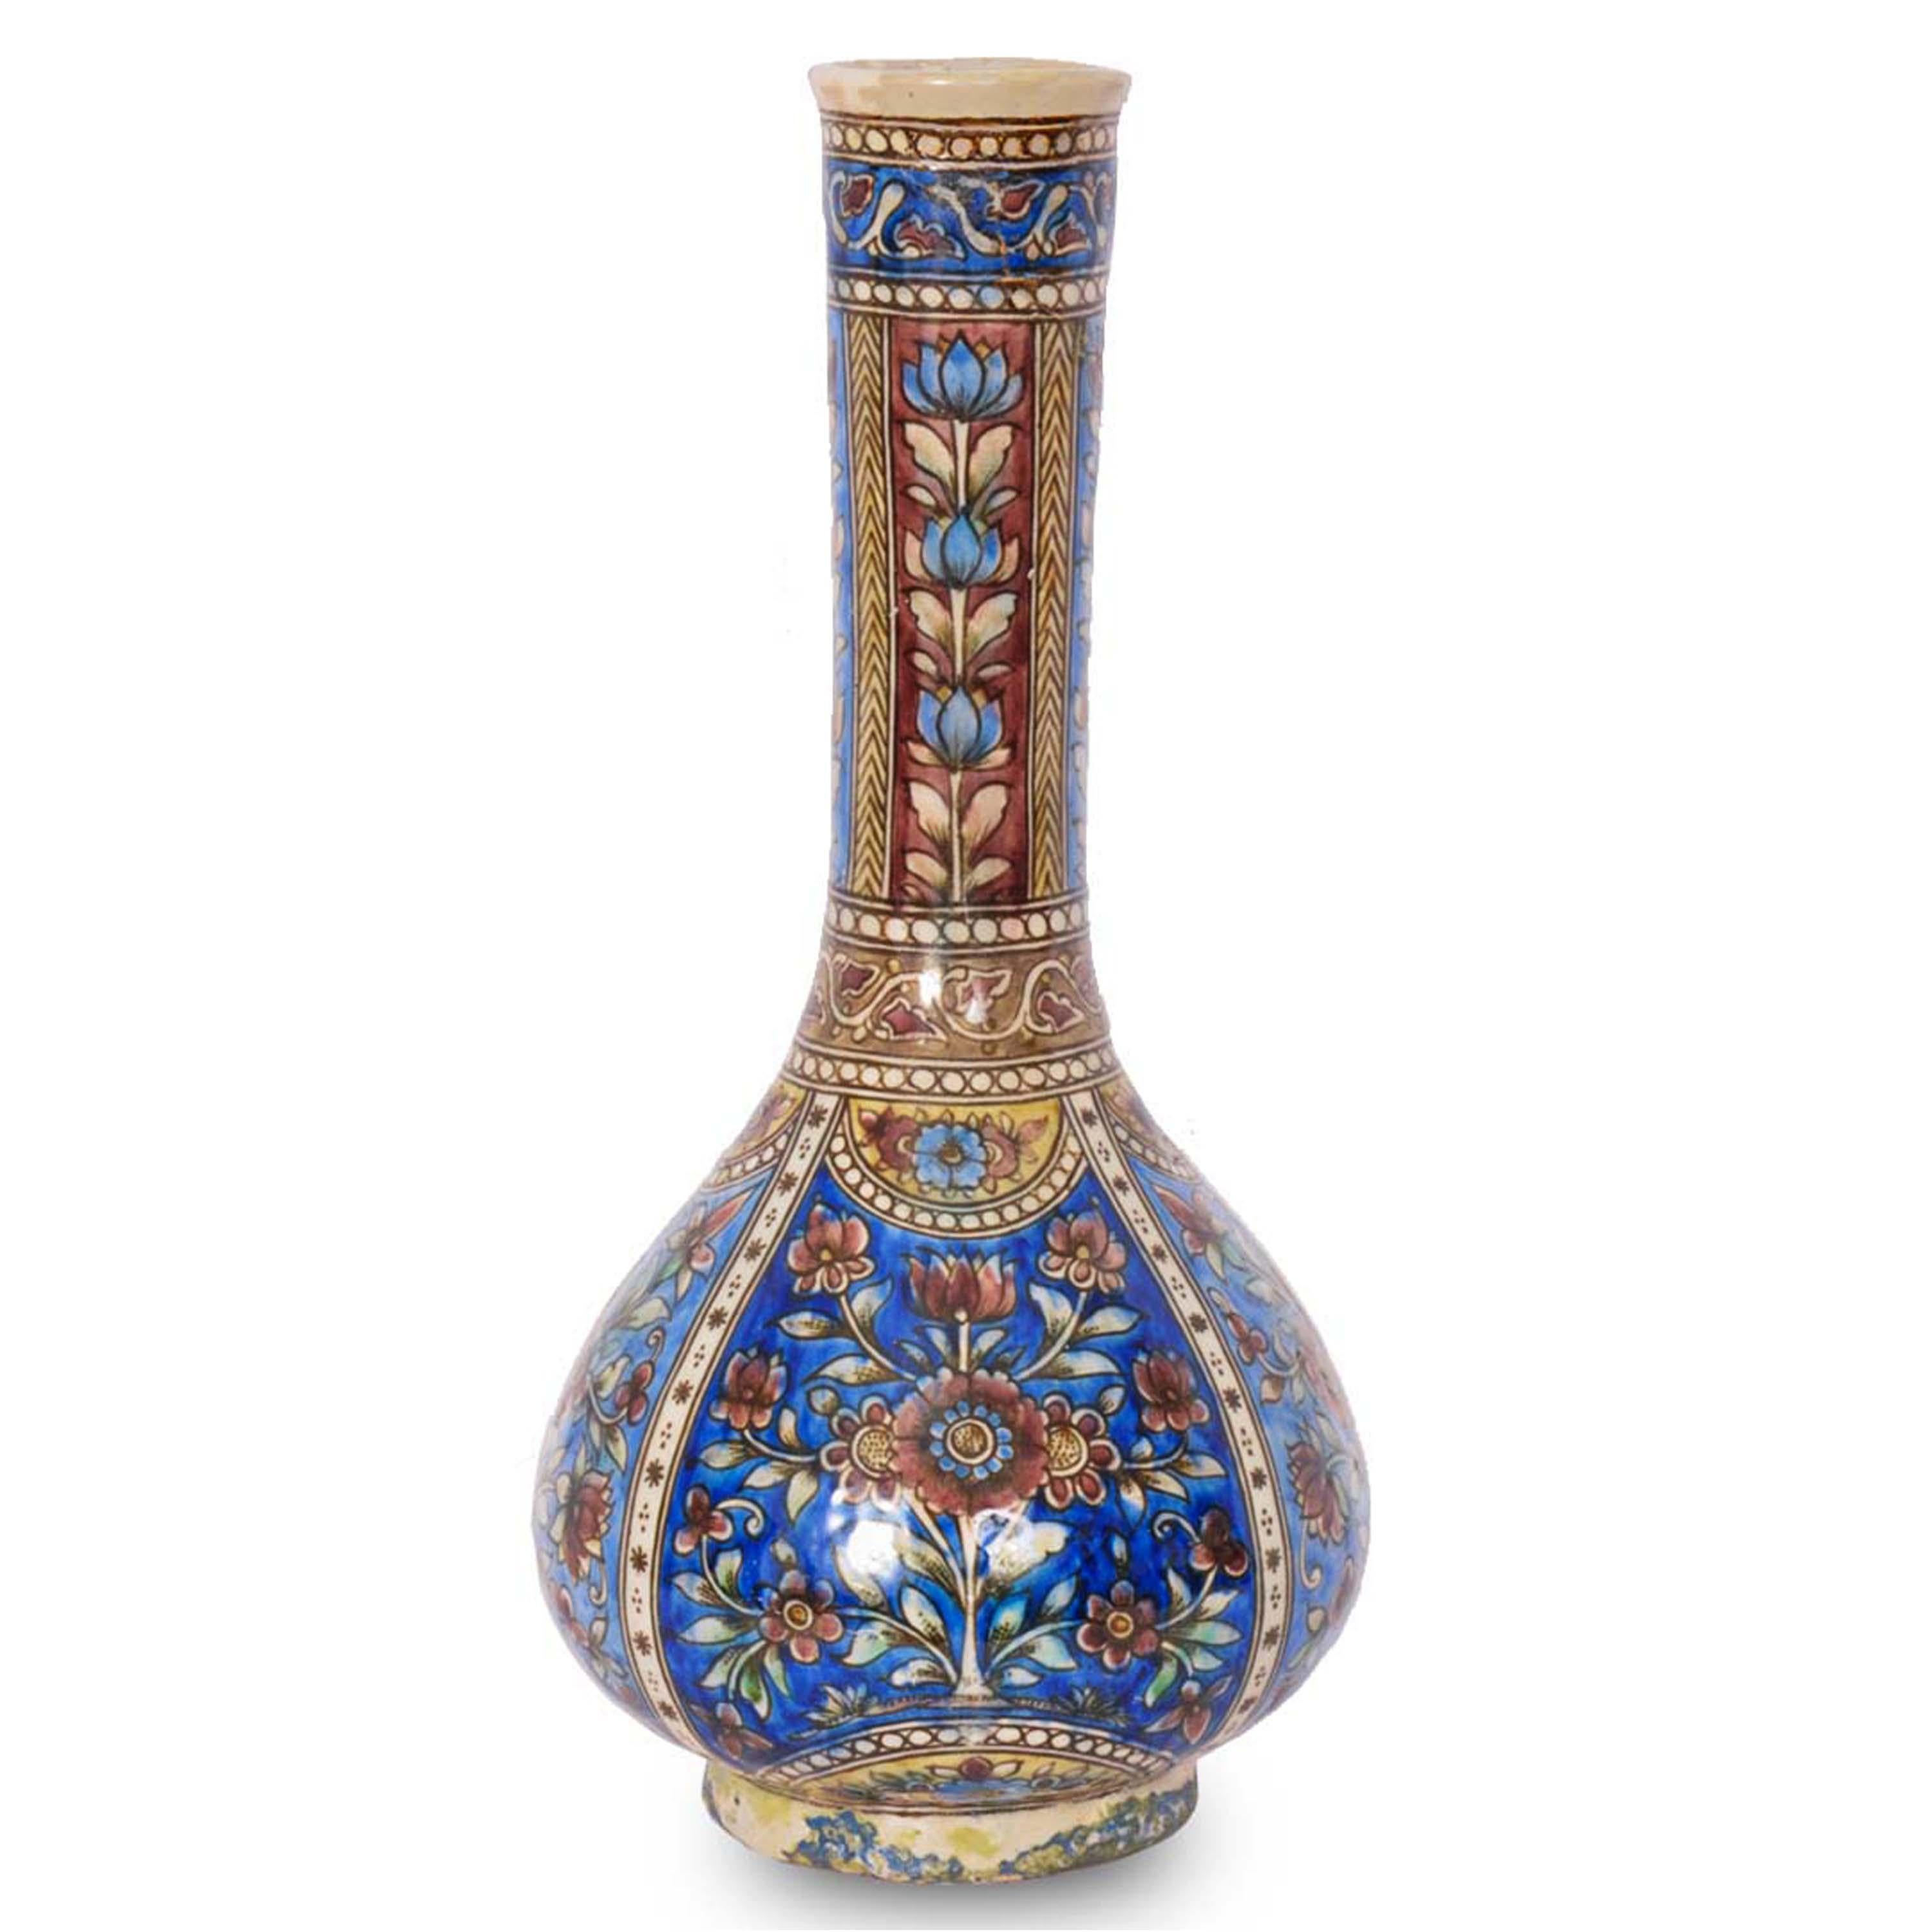 Ein gutes Paar antiker Flaschenvasen aus osmanisch-islamischer Iznik/Kutahya-Keramik des frühen 19. Jahrhunderts, Türkei, um 1820.
Die flaschenförmigen Vasen mit ausgestellter Mündung und sich verjüngendem Hals haben kugelförmige Basen und stehen